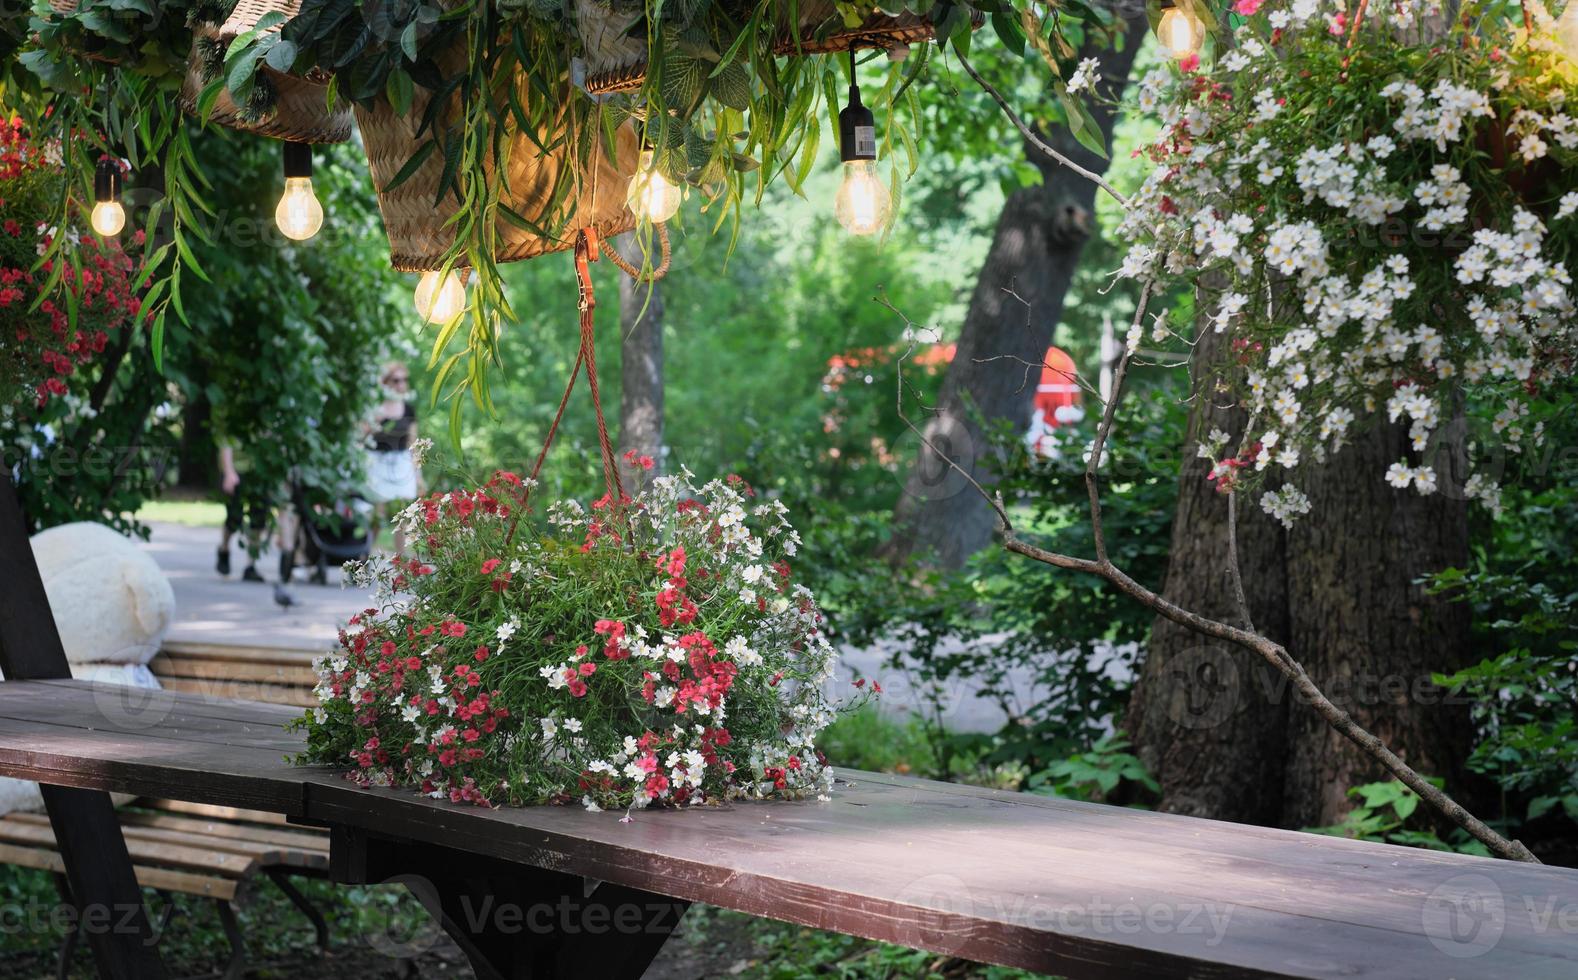 bellissimo posto romantico al caffè di strada in un parco. tavolo in legno decorato con fiori e cesti di vimini. lampade appese sopra un tavolo. posto per riposarsi e uscire insieme. foto